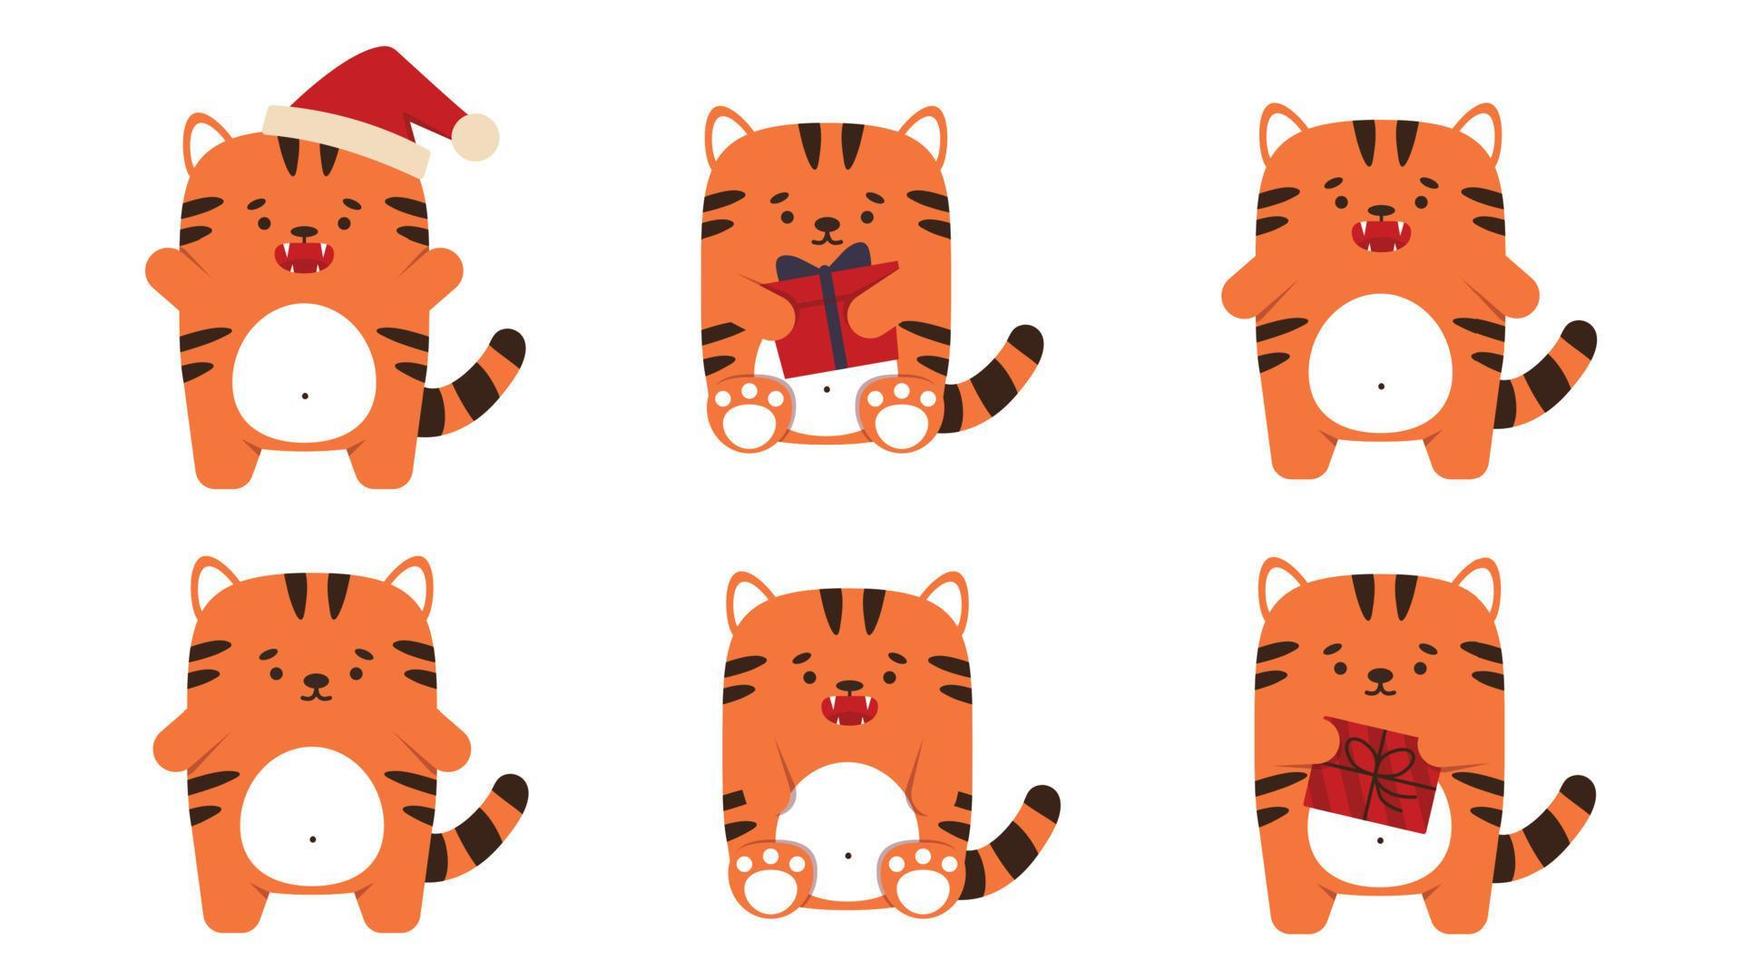 conjunto de gatinhos tigres pequenos em um estilo simples. símbolo animal para o ano novo chinês de 2022. um tigre laranja mal-humorado e zangado levanta-se e senta-se com um peixe. para um banner, decoração infantil. ilustração vetorial. vetor